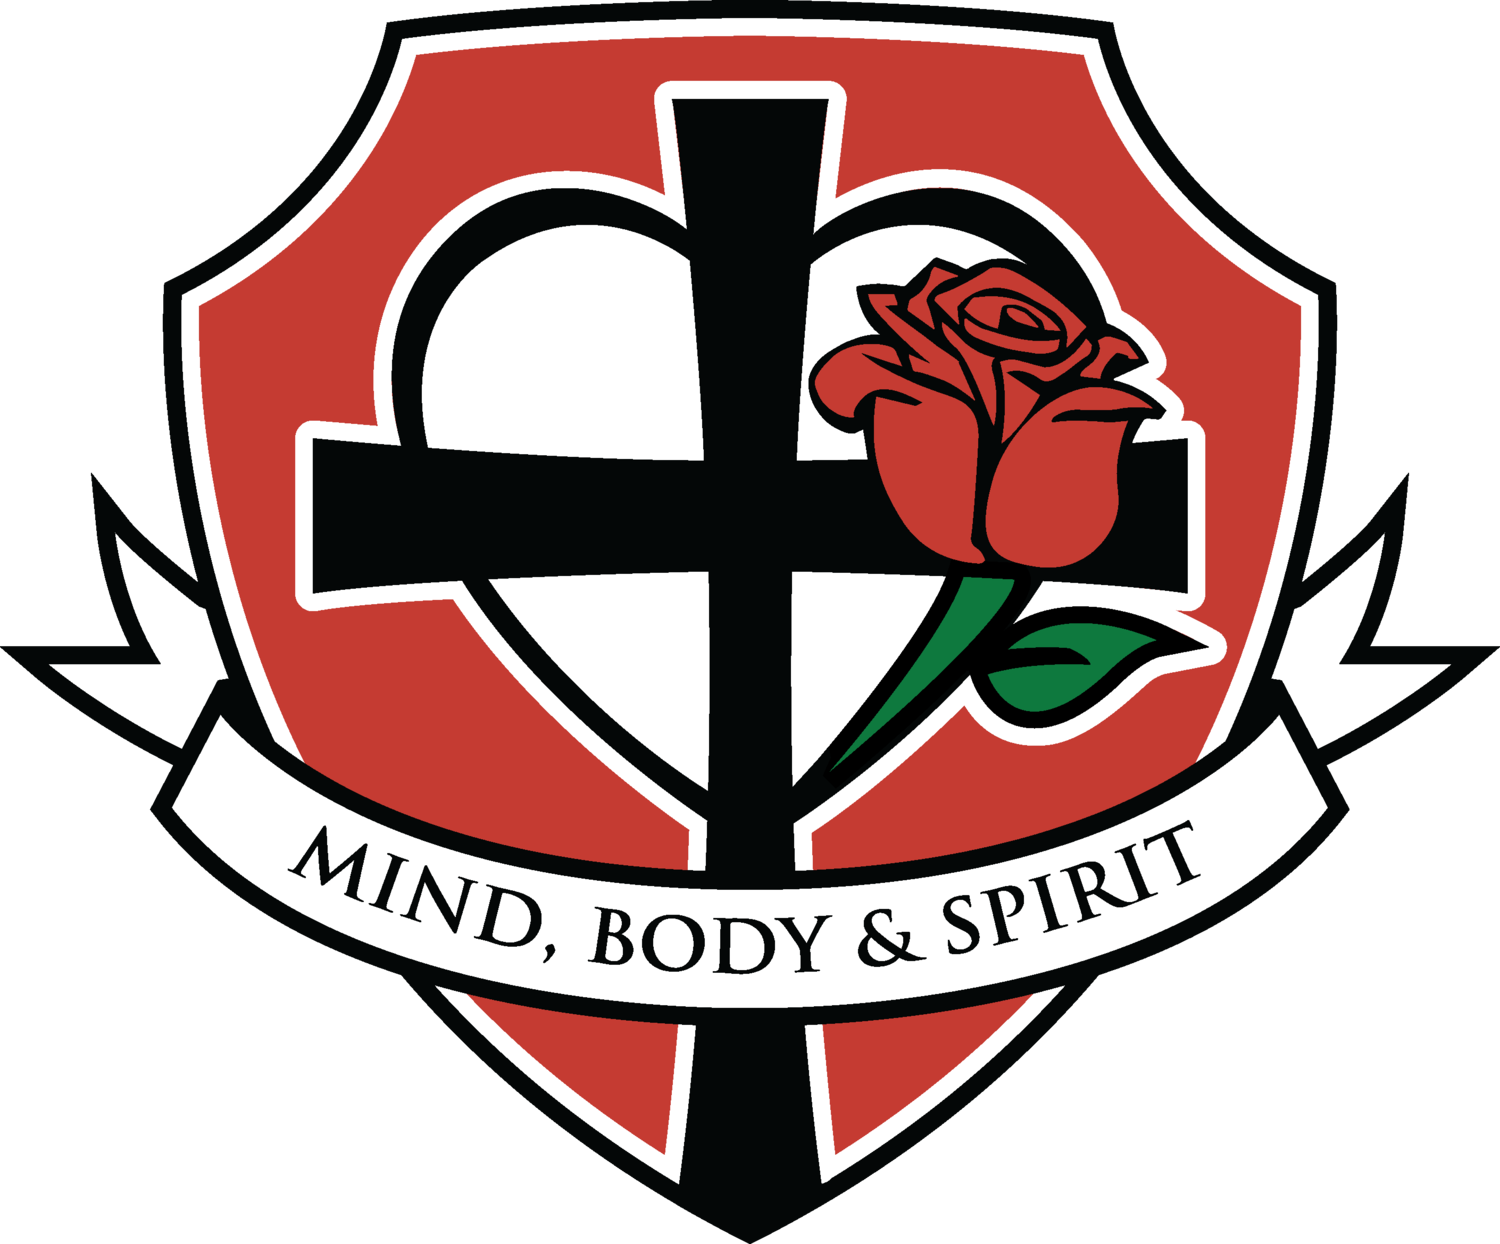 St. Rose of Lima Catholic School